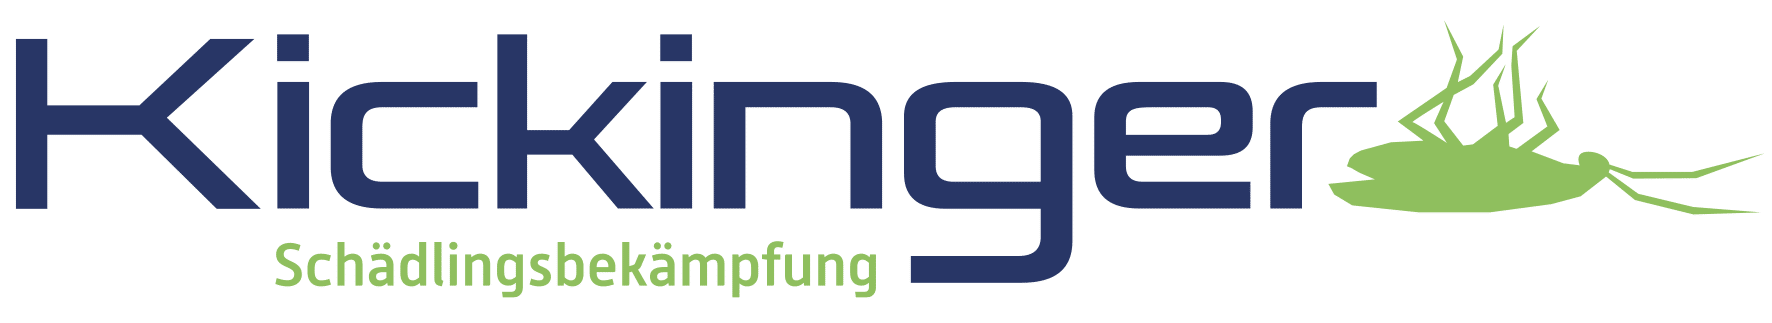 Kickinger_Logo_RGB